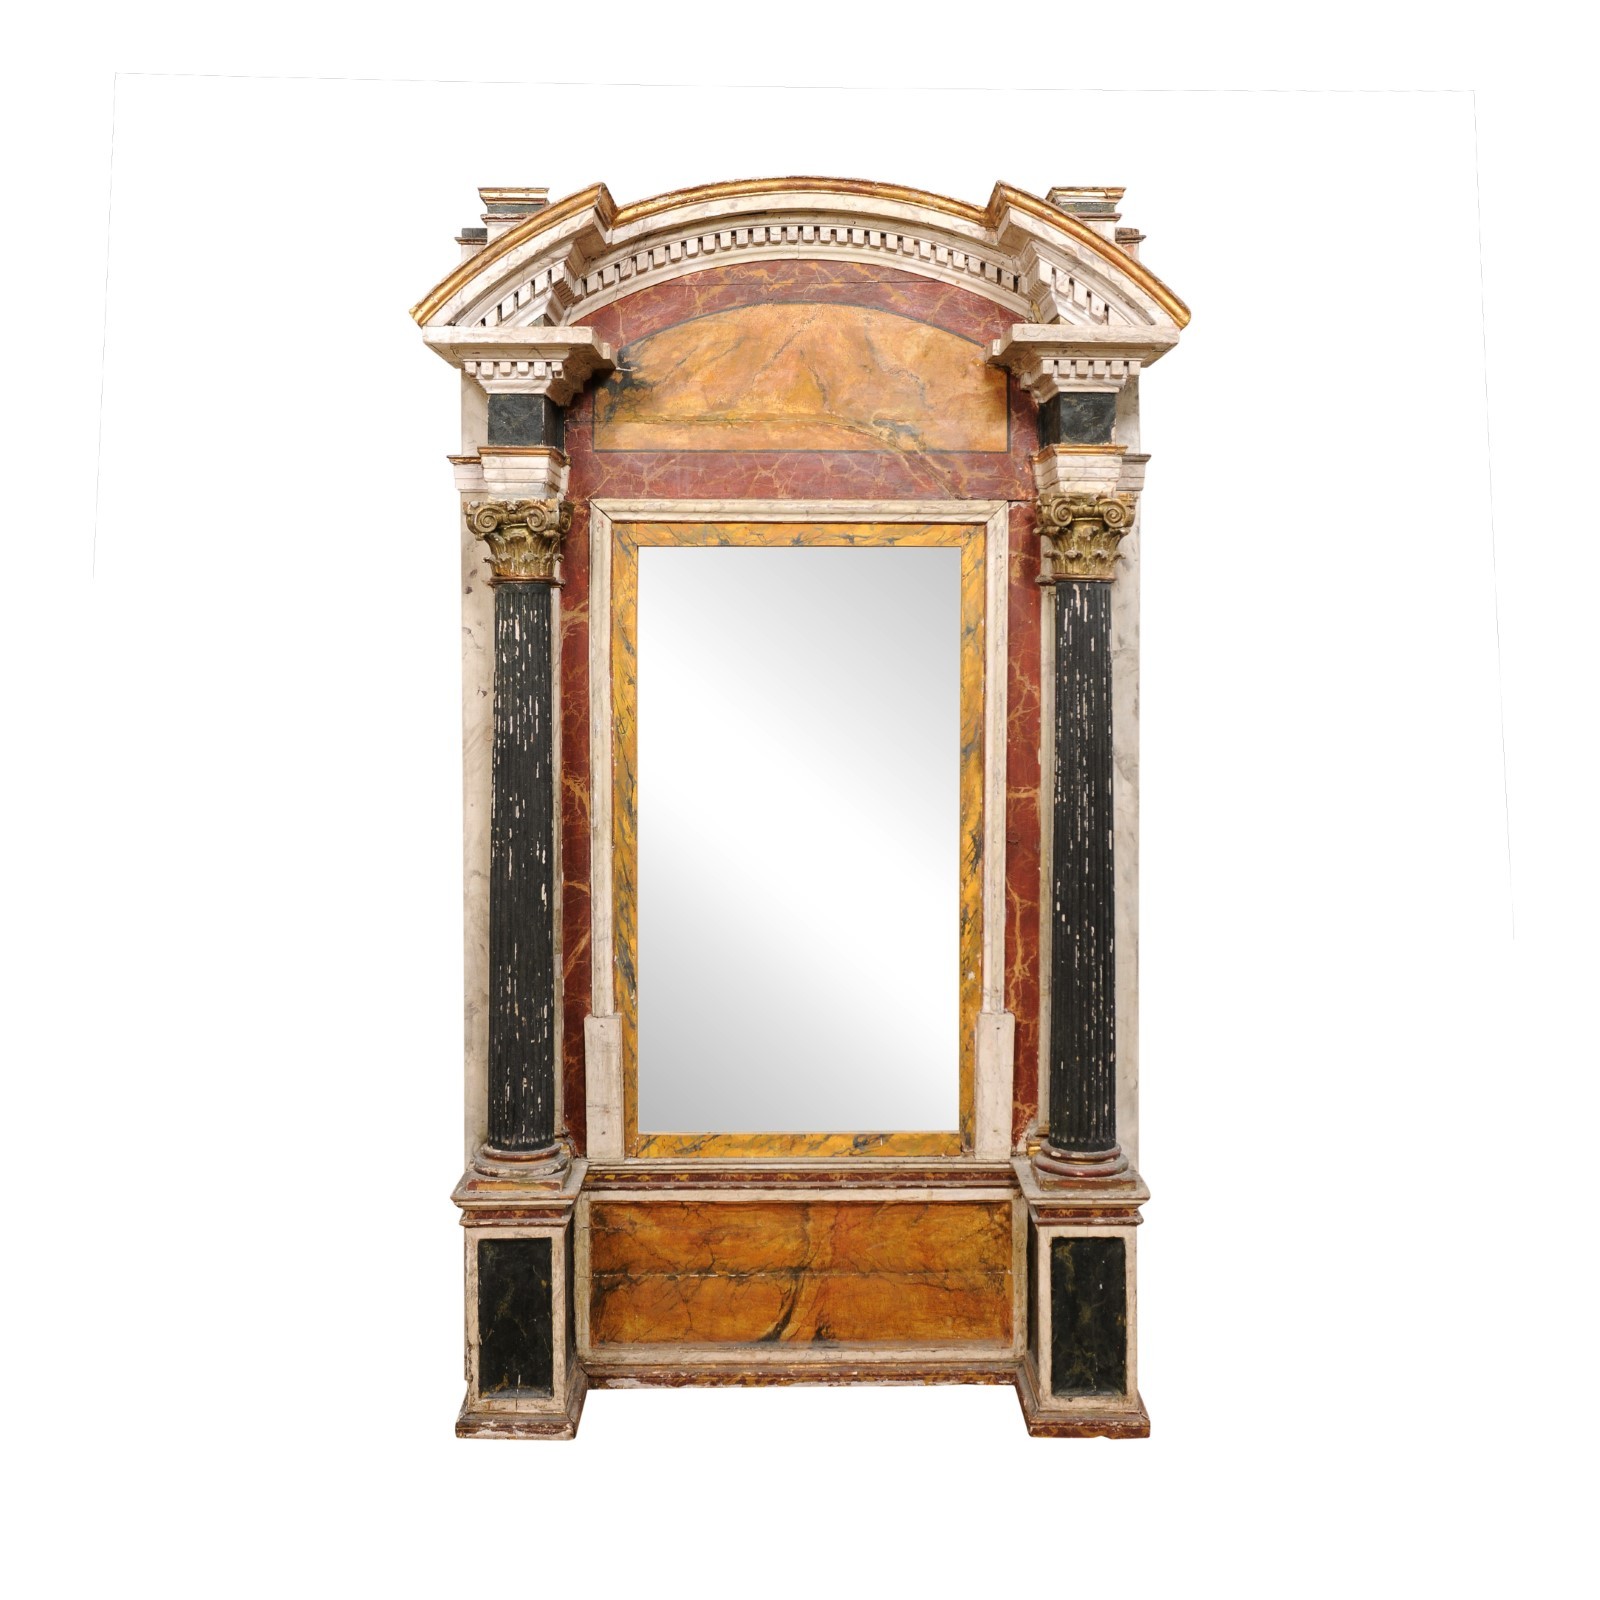 Italian Grand Architectural Mirror, 19th C.